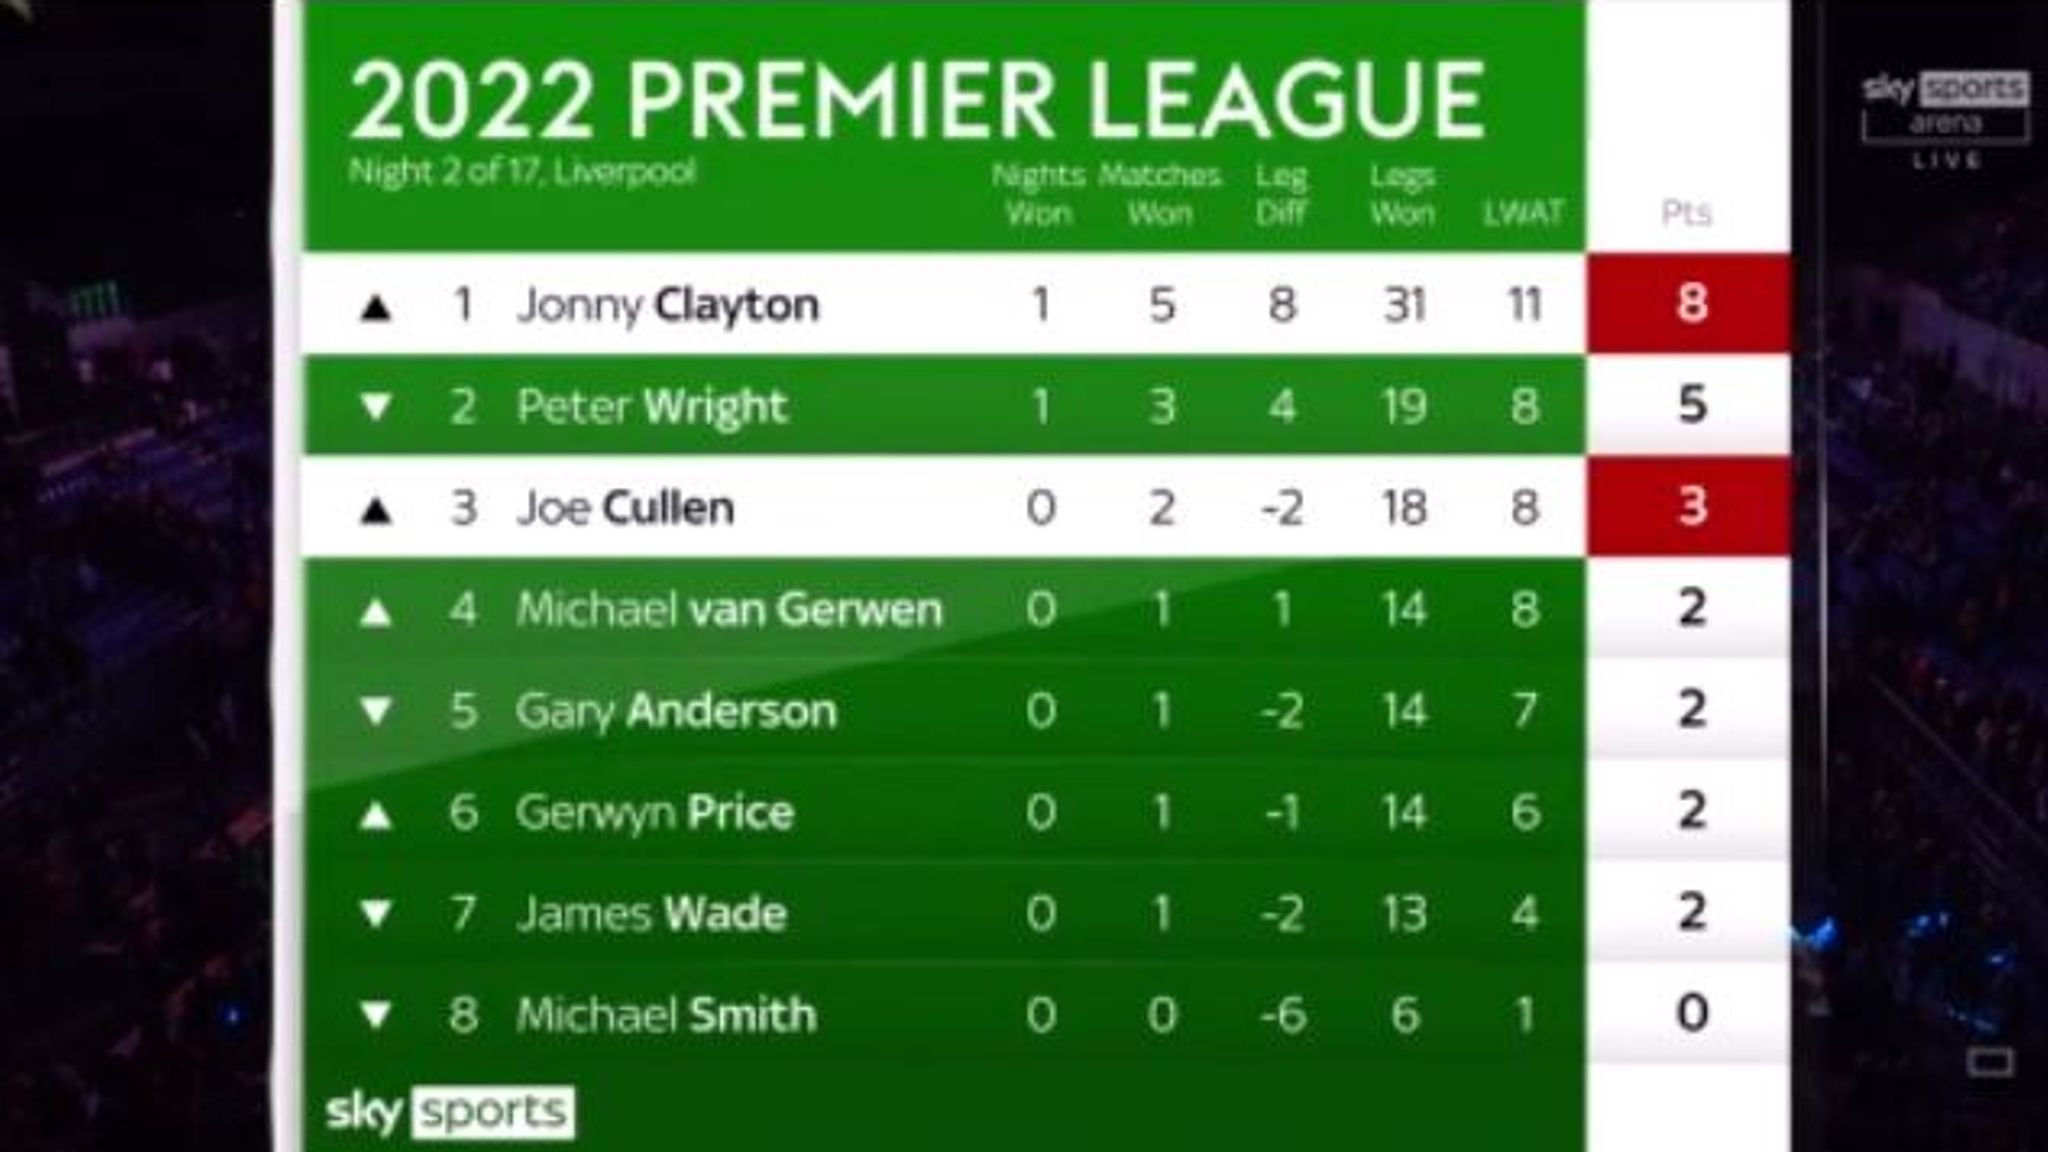 Premier league results & table